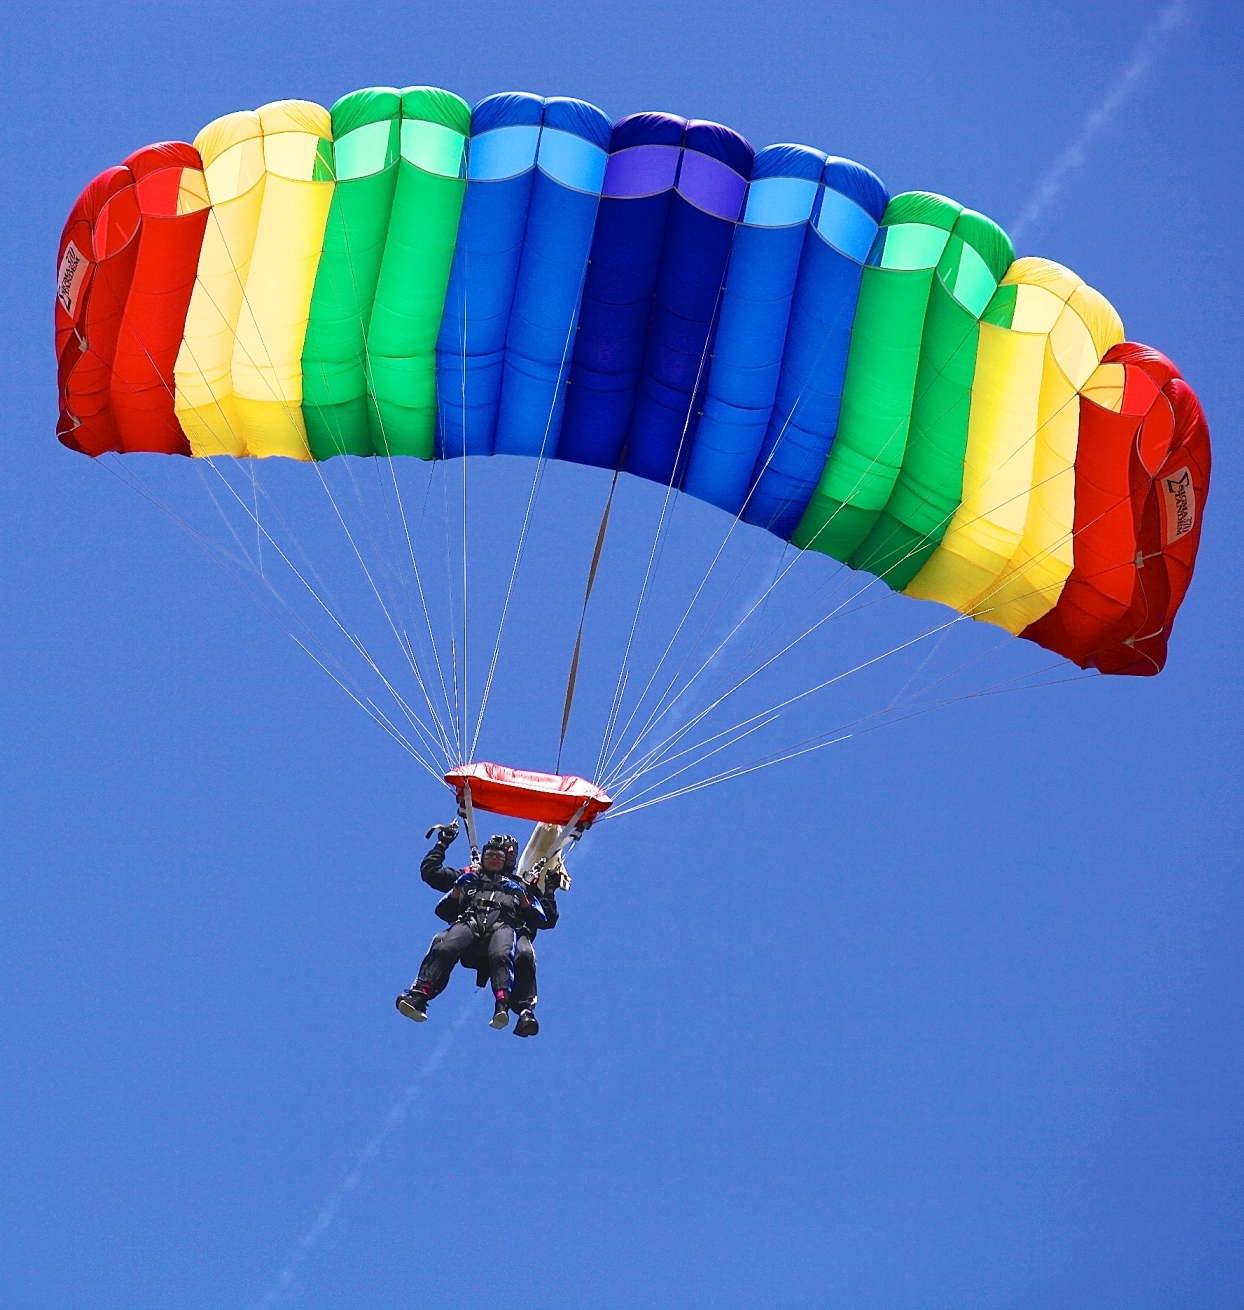 Пловдивчанинът скача от 60 години и има над 1300 парашутни скока досега (Сн. Архив)